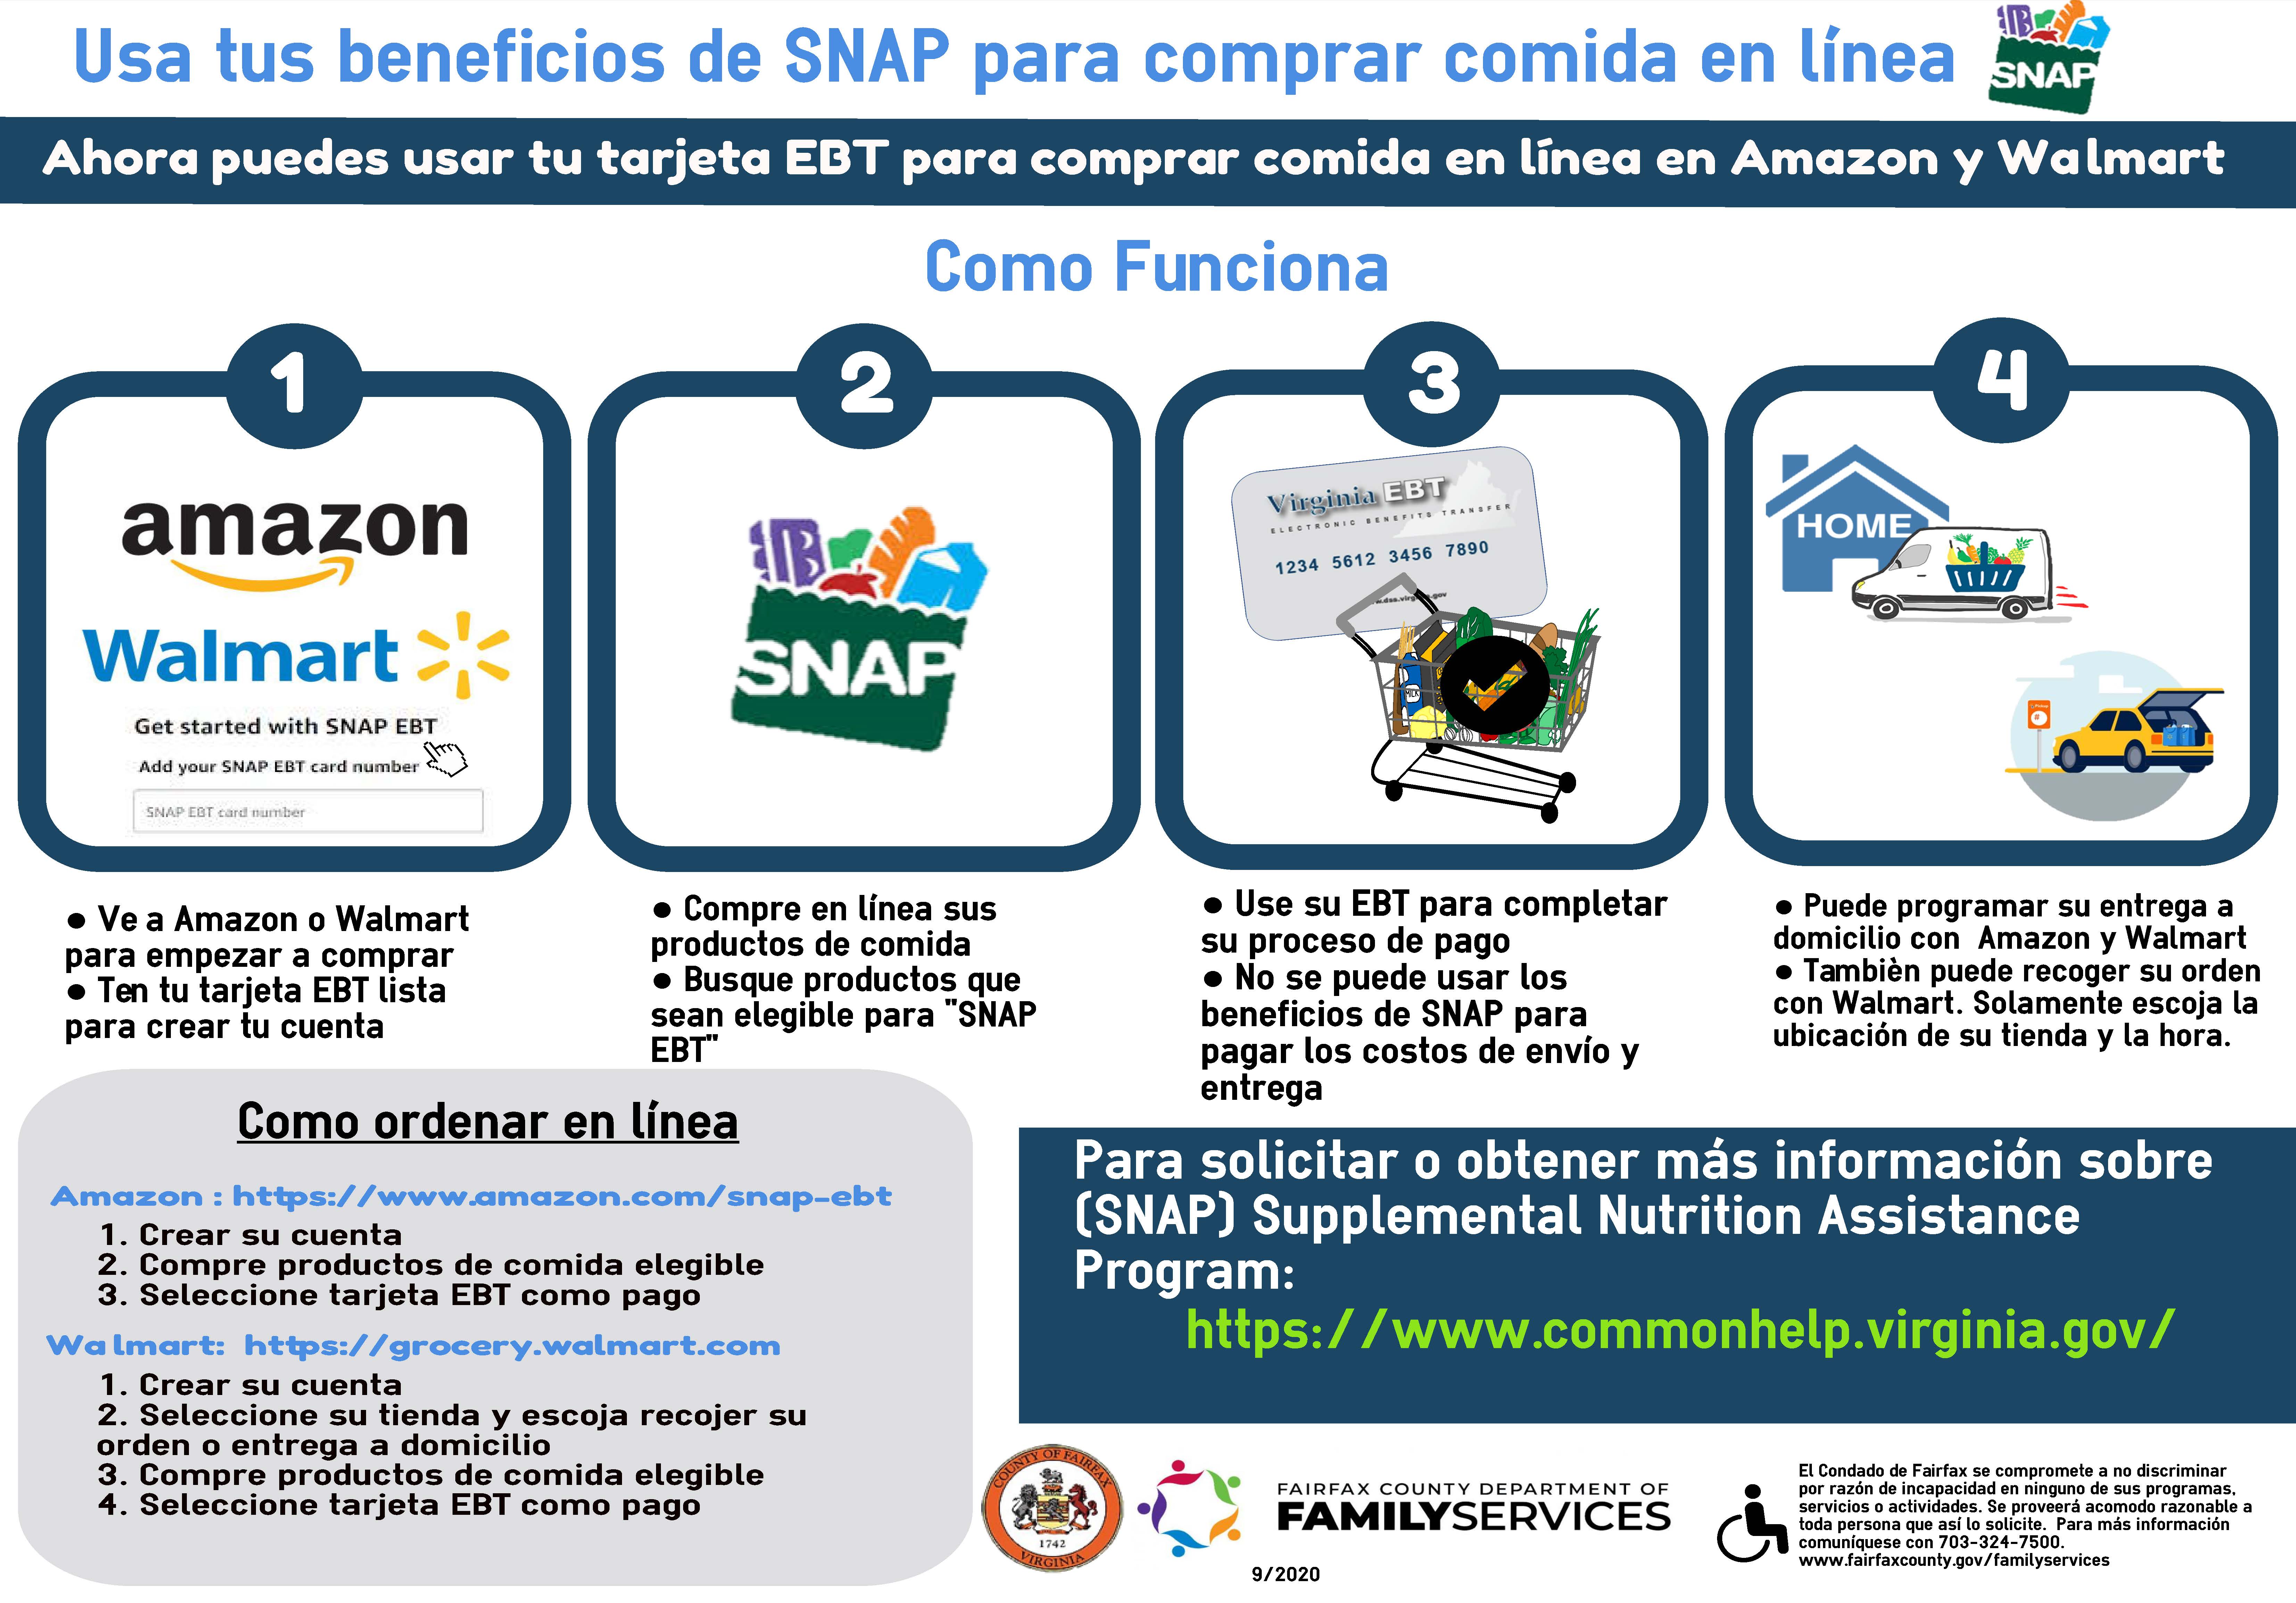 Usa tus beneficios de SNAP para comprar comida en linea